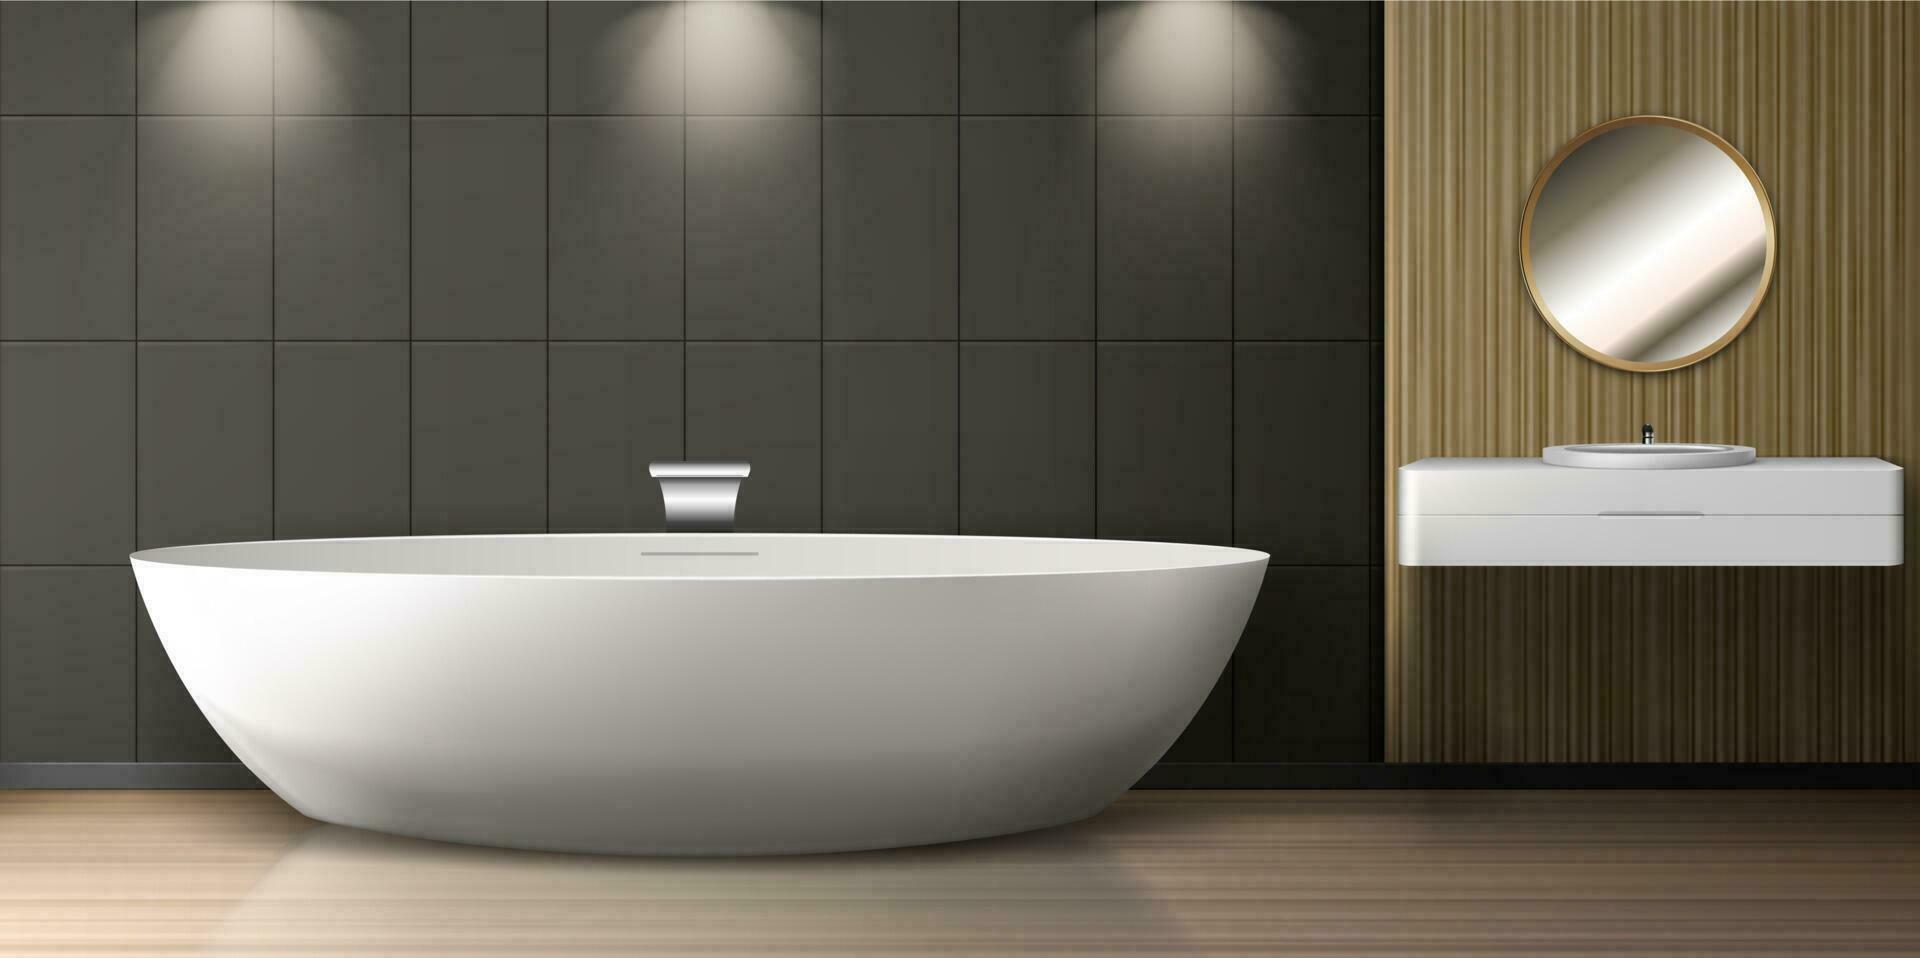 Bathroom interior with bath, sink and round mirror vector